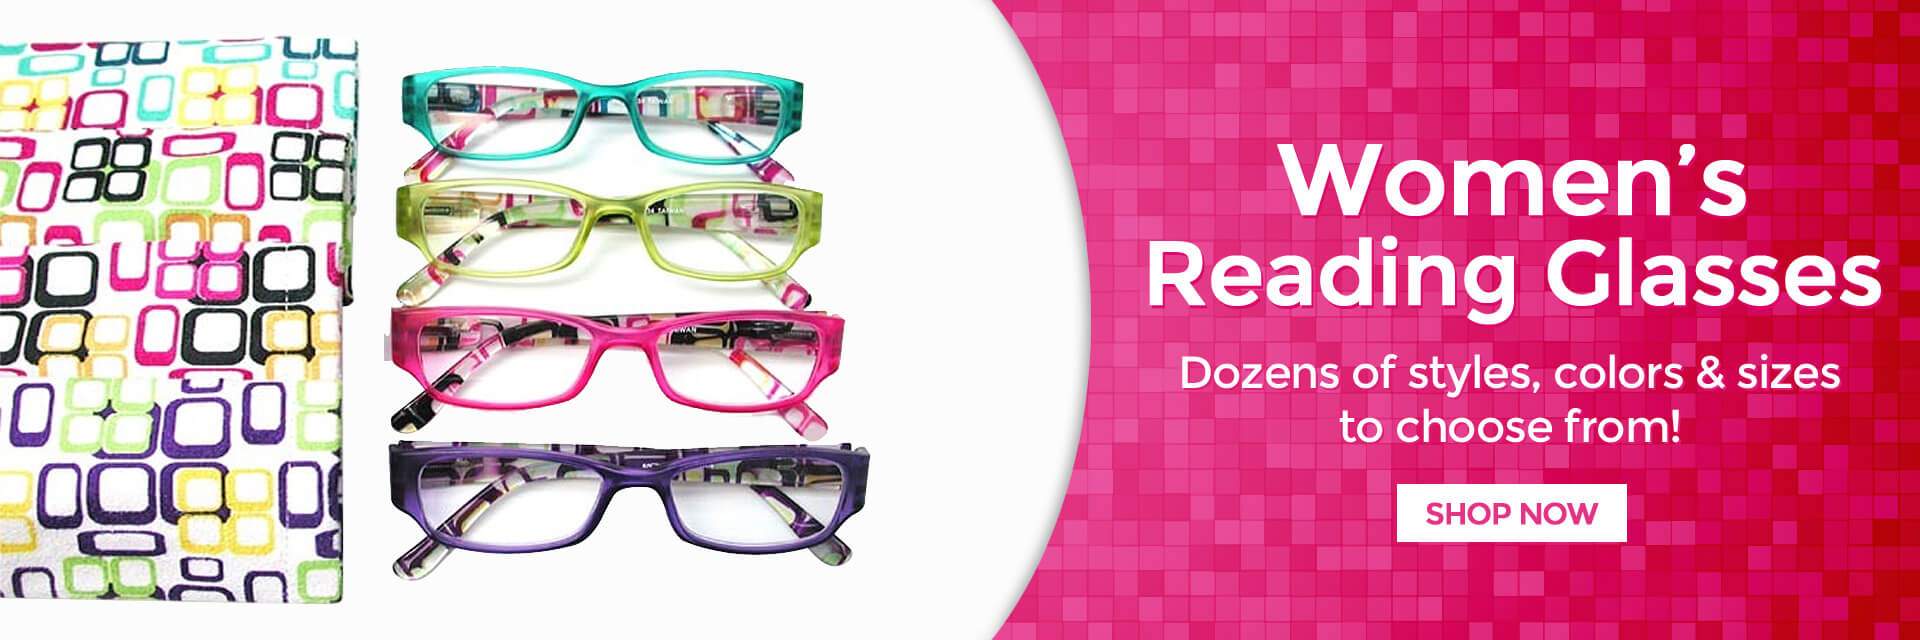 Women's Reading Glasses